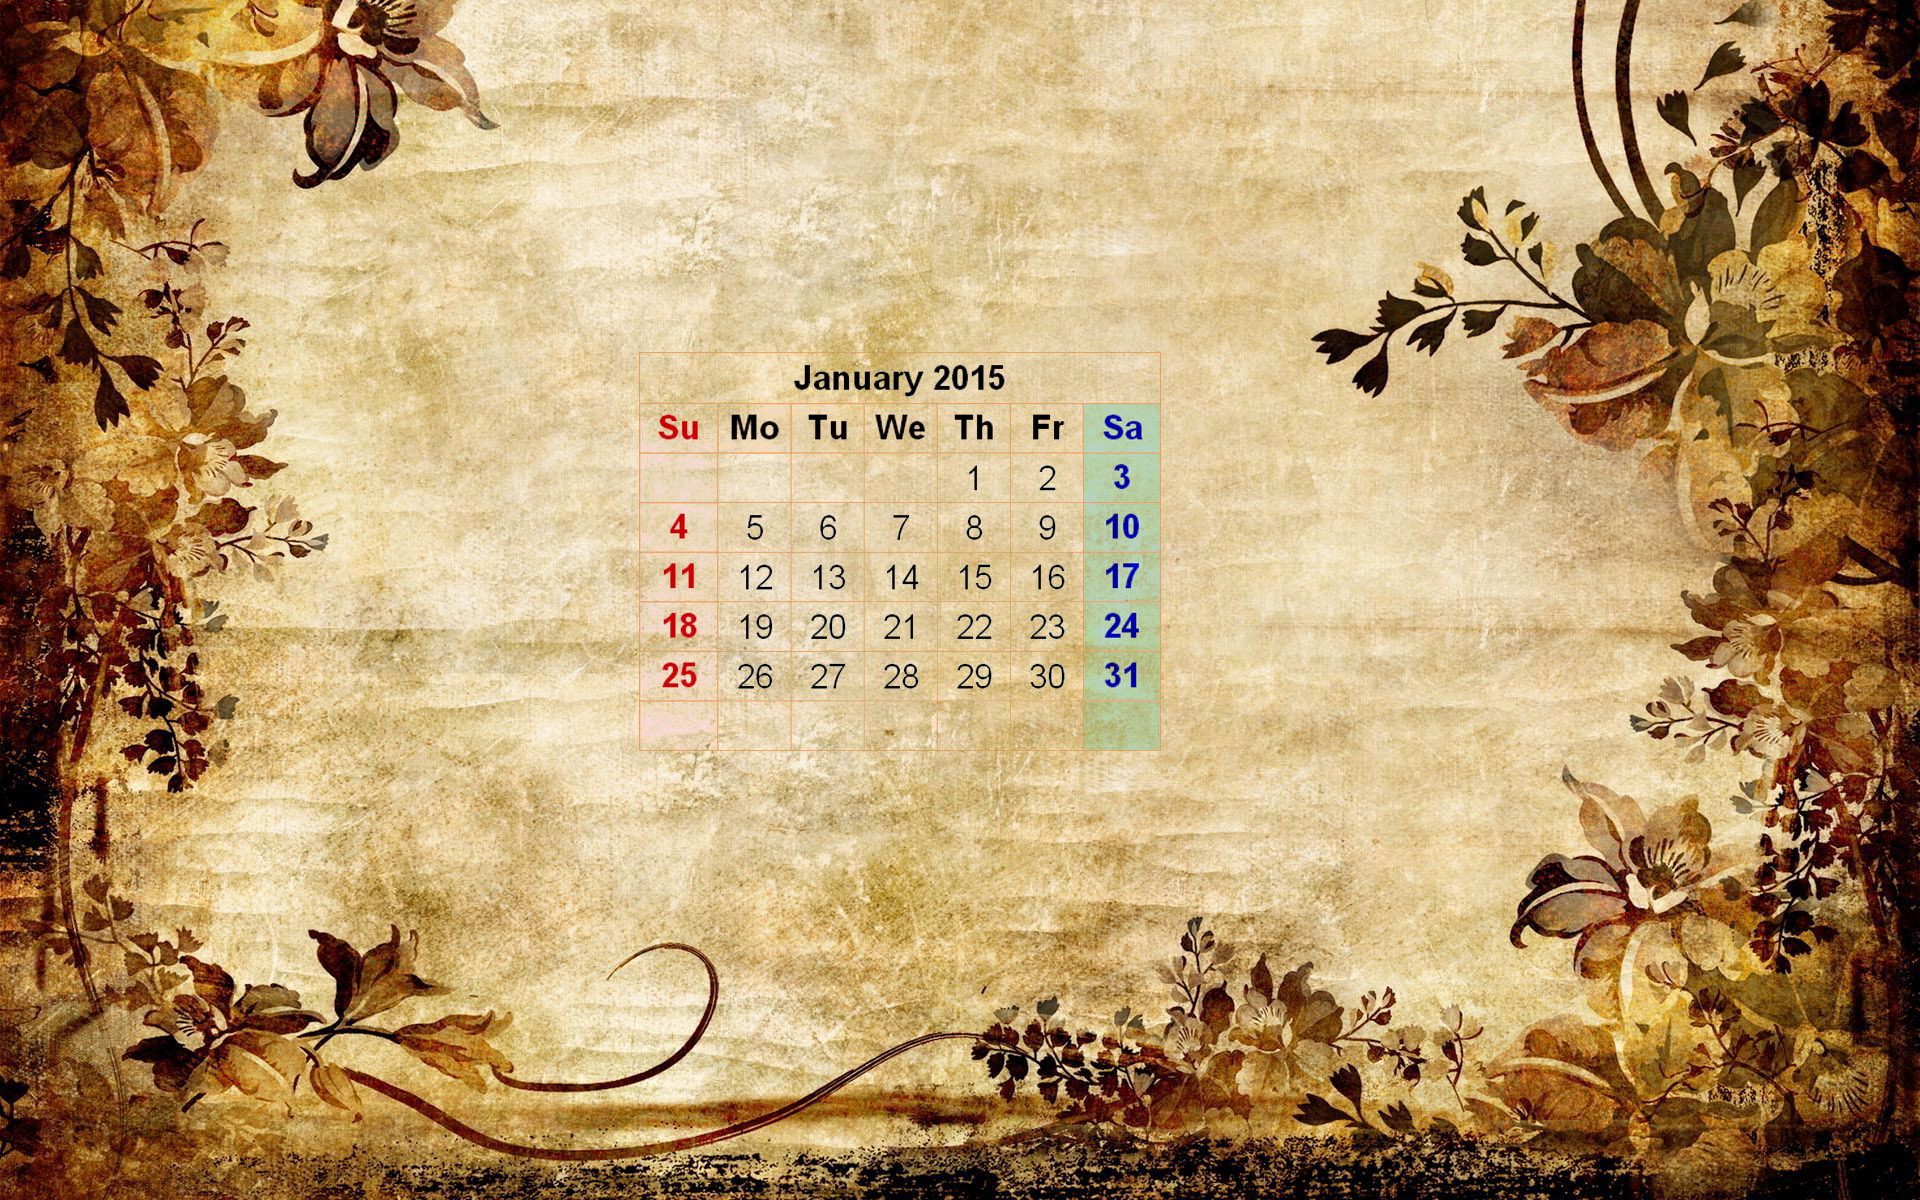 January 2015 Wallpaper Calendar New Calendar Template Site